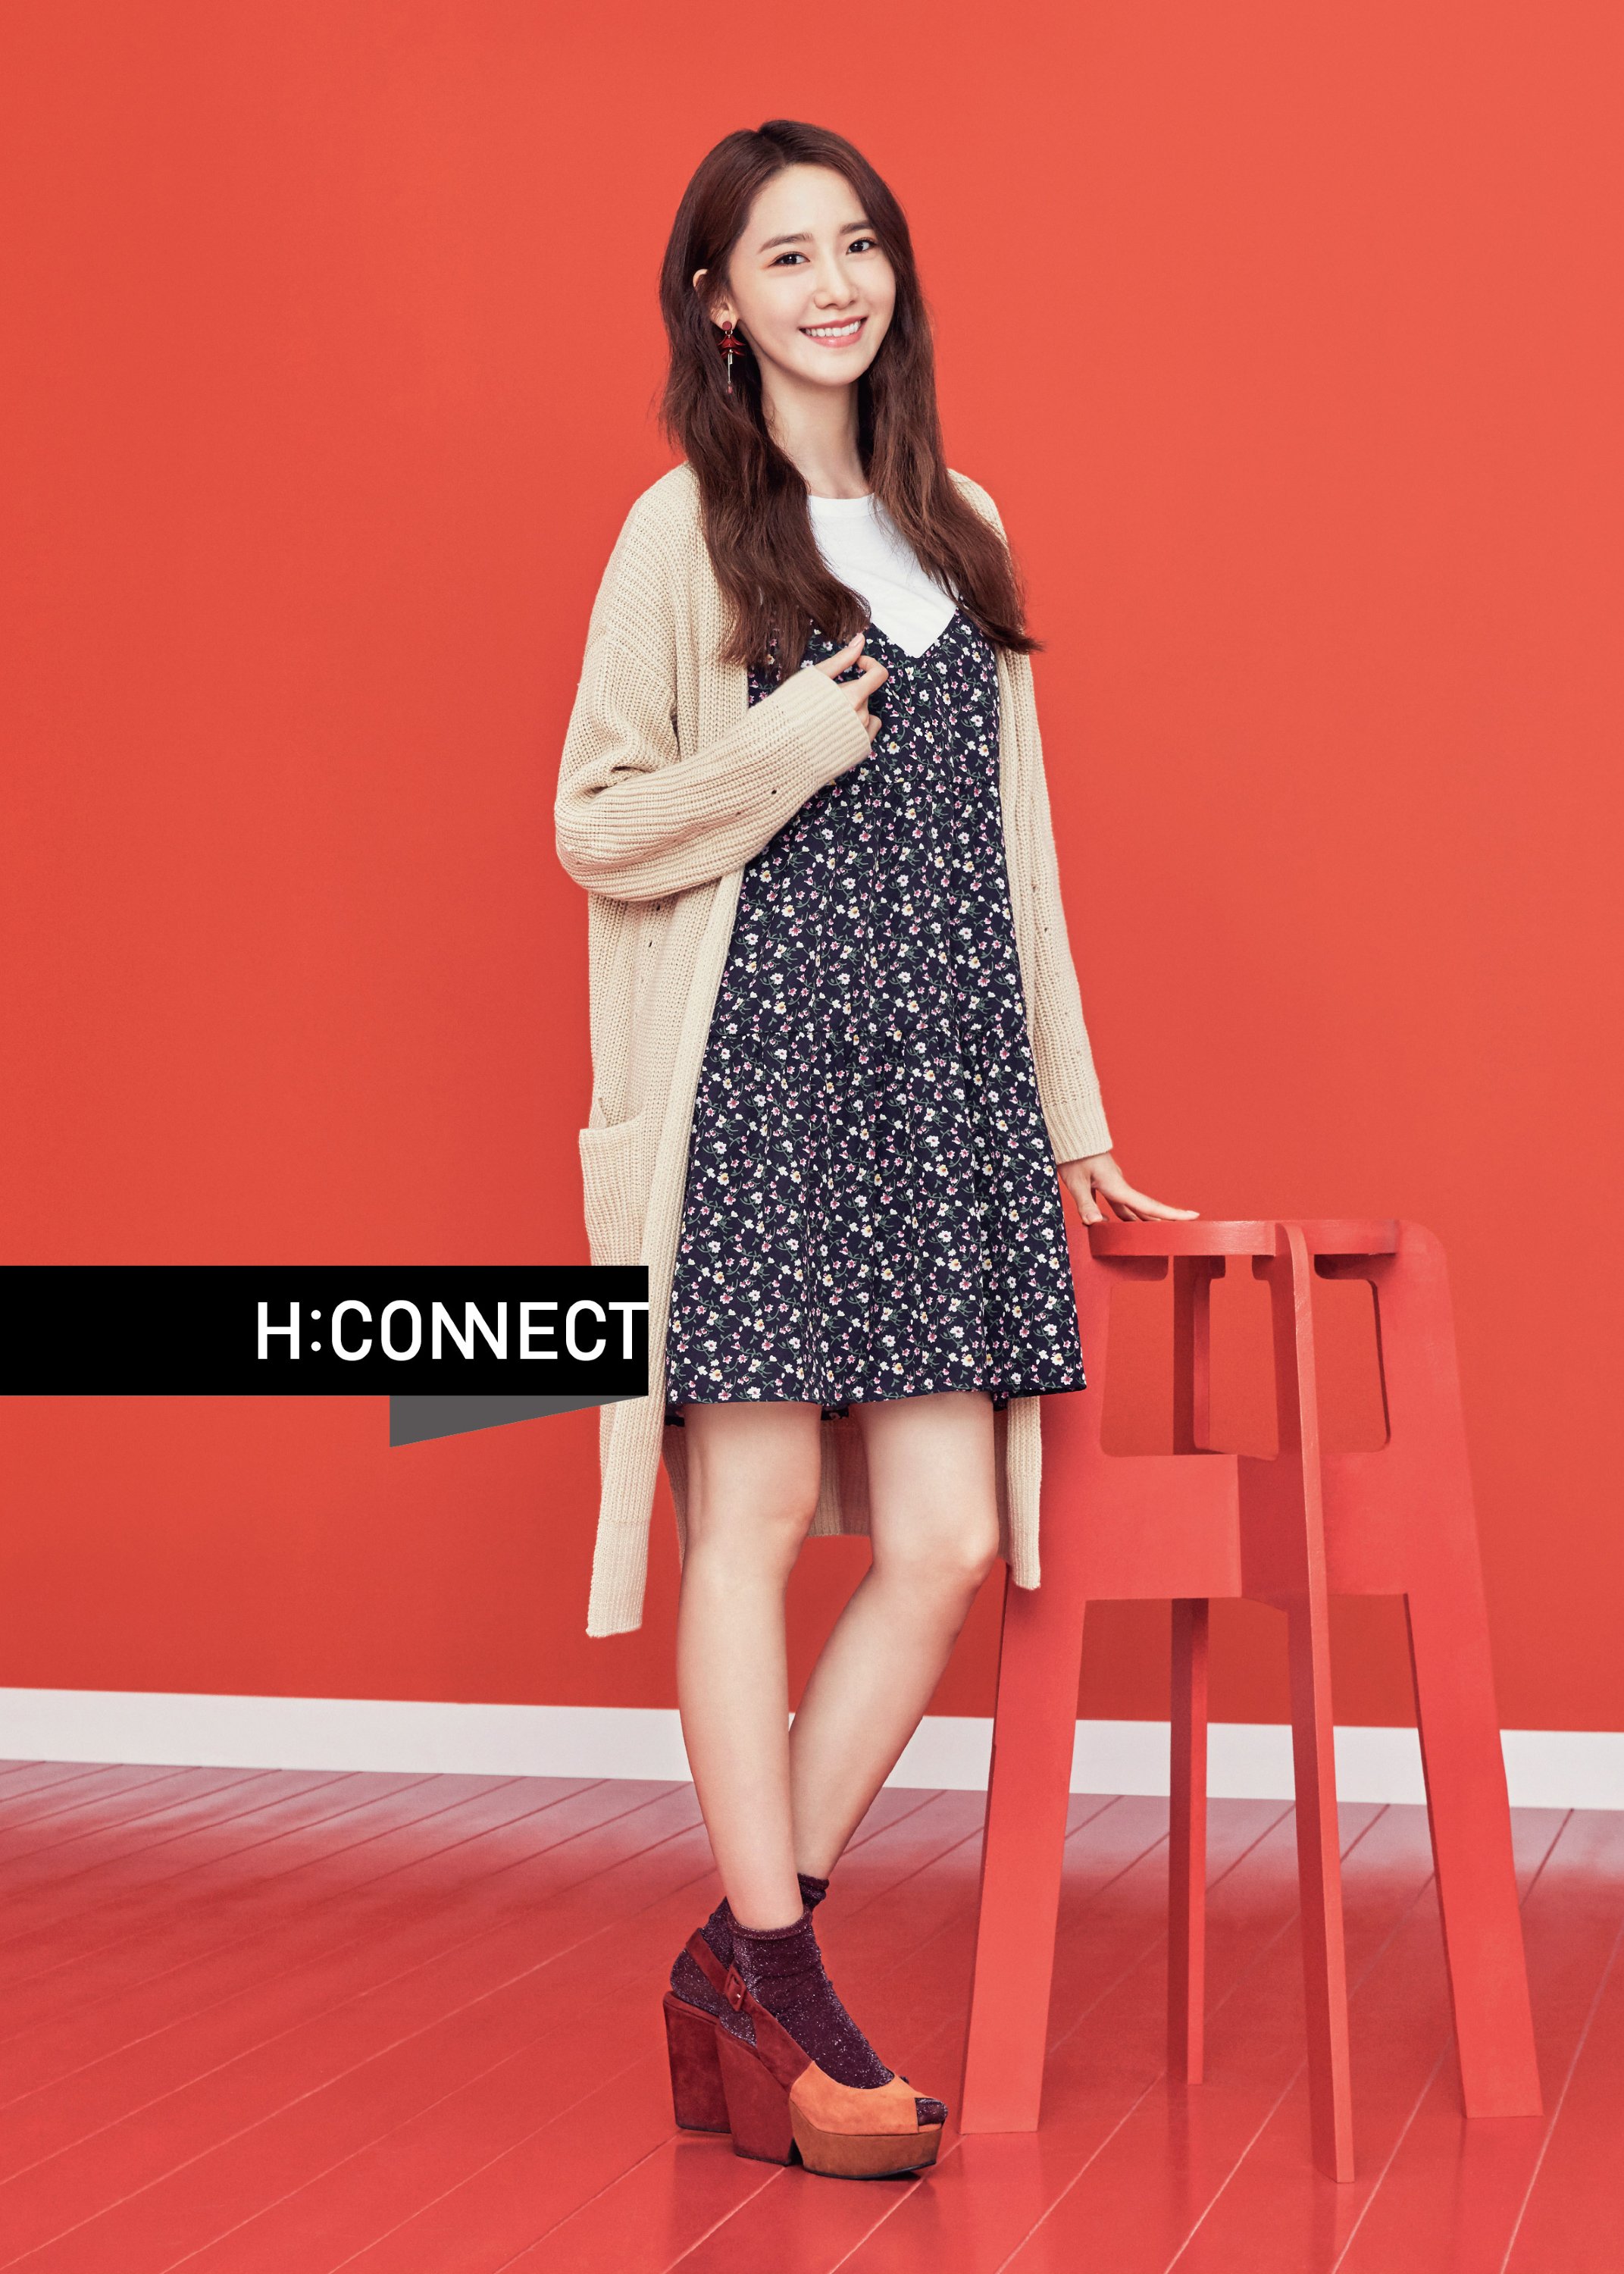 [OTHER][27-07-2015]YoonA trở thành người mẫu mới cho dòng thời trang "H:CONNECT" - Page 7 WeopXLIXQ5-3000x3000